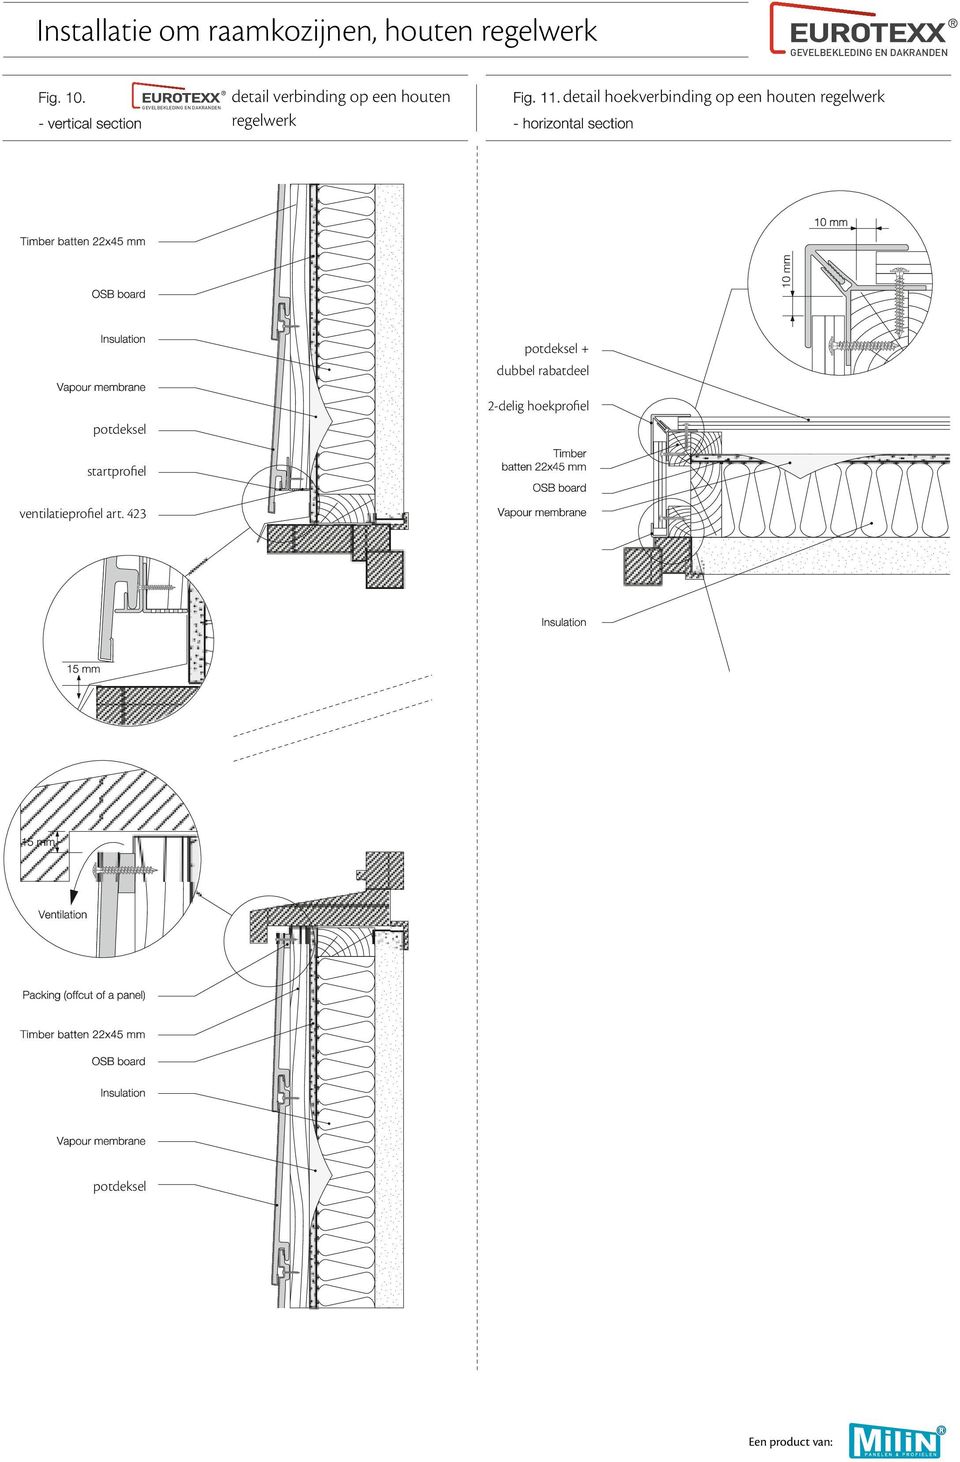 detail hoekverbinding op een houten regelwerk